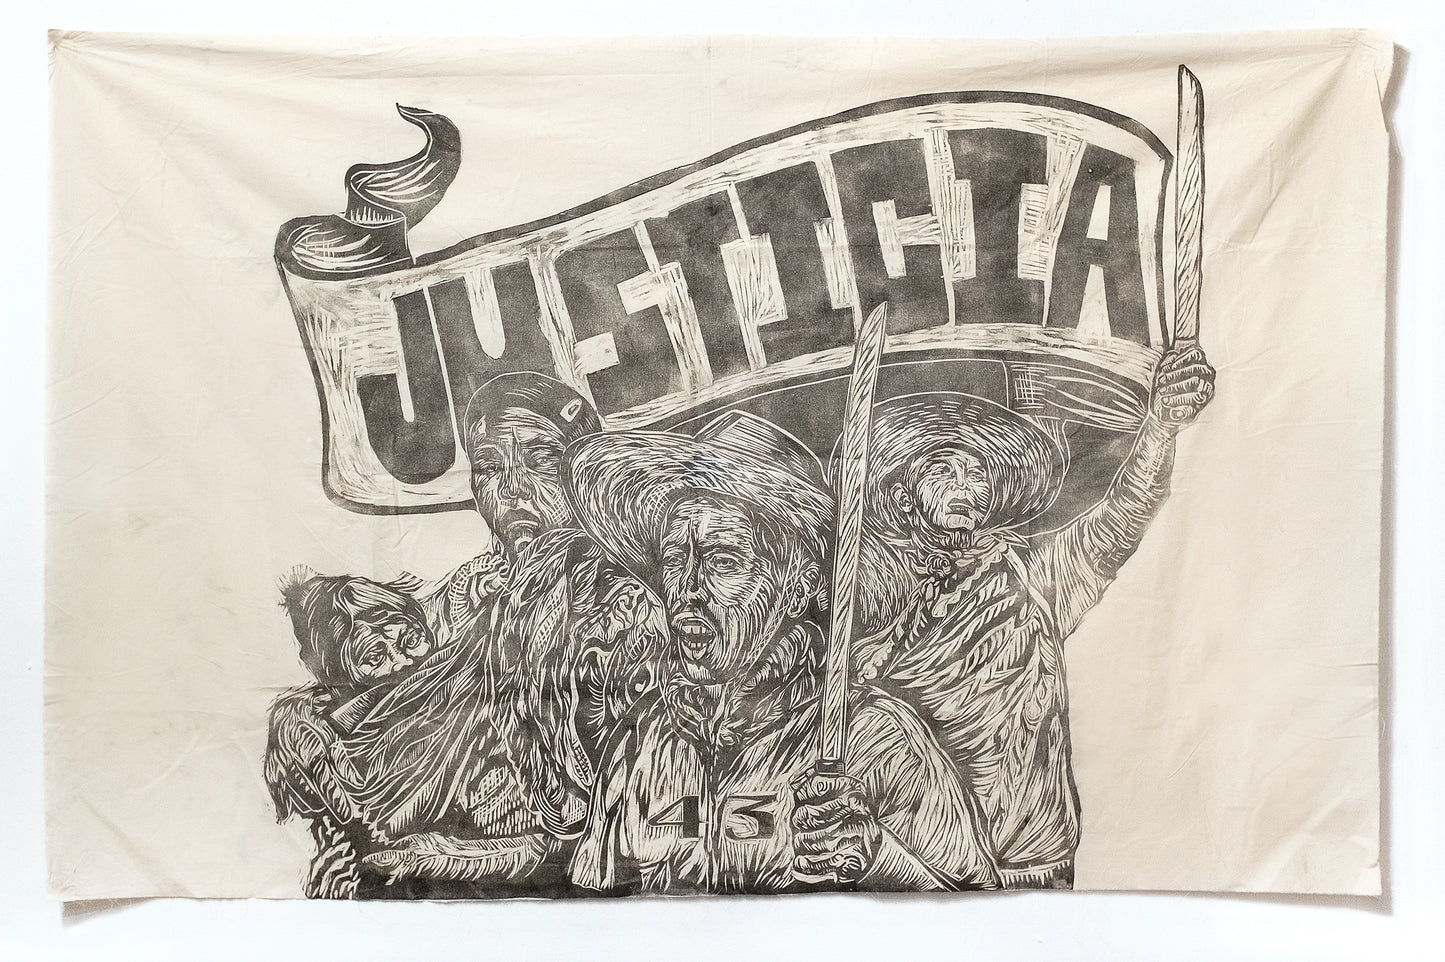 Justicia, 43 by Jhovany De Ala